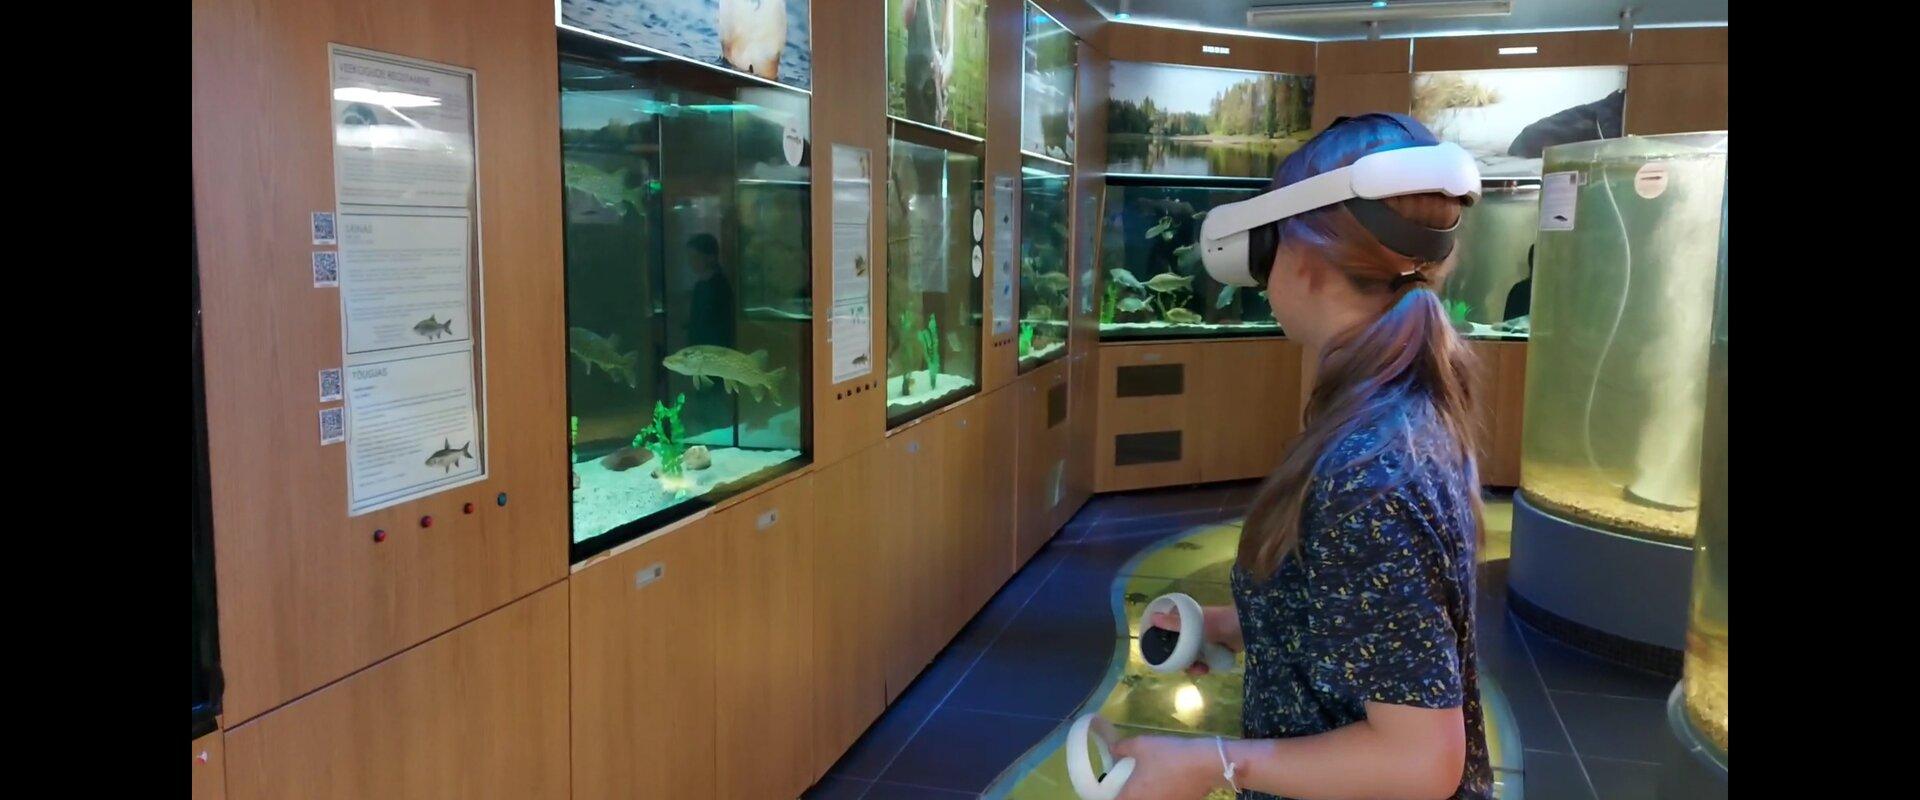 Järvemuuseum Võrtsjärv virtuaalreaalsus VR lapsed kalad elamus akva:rium muuseum